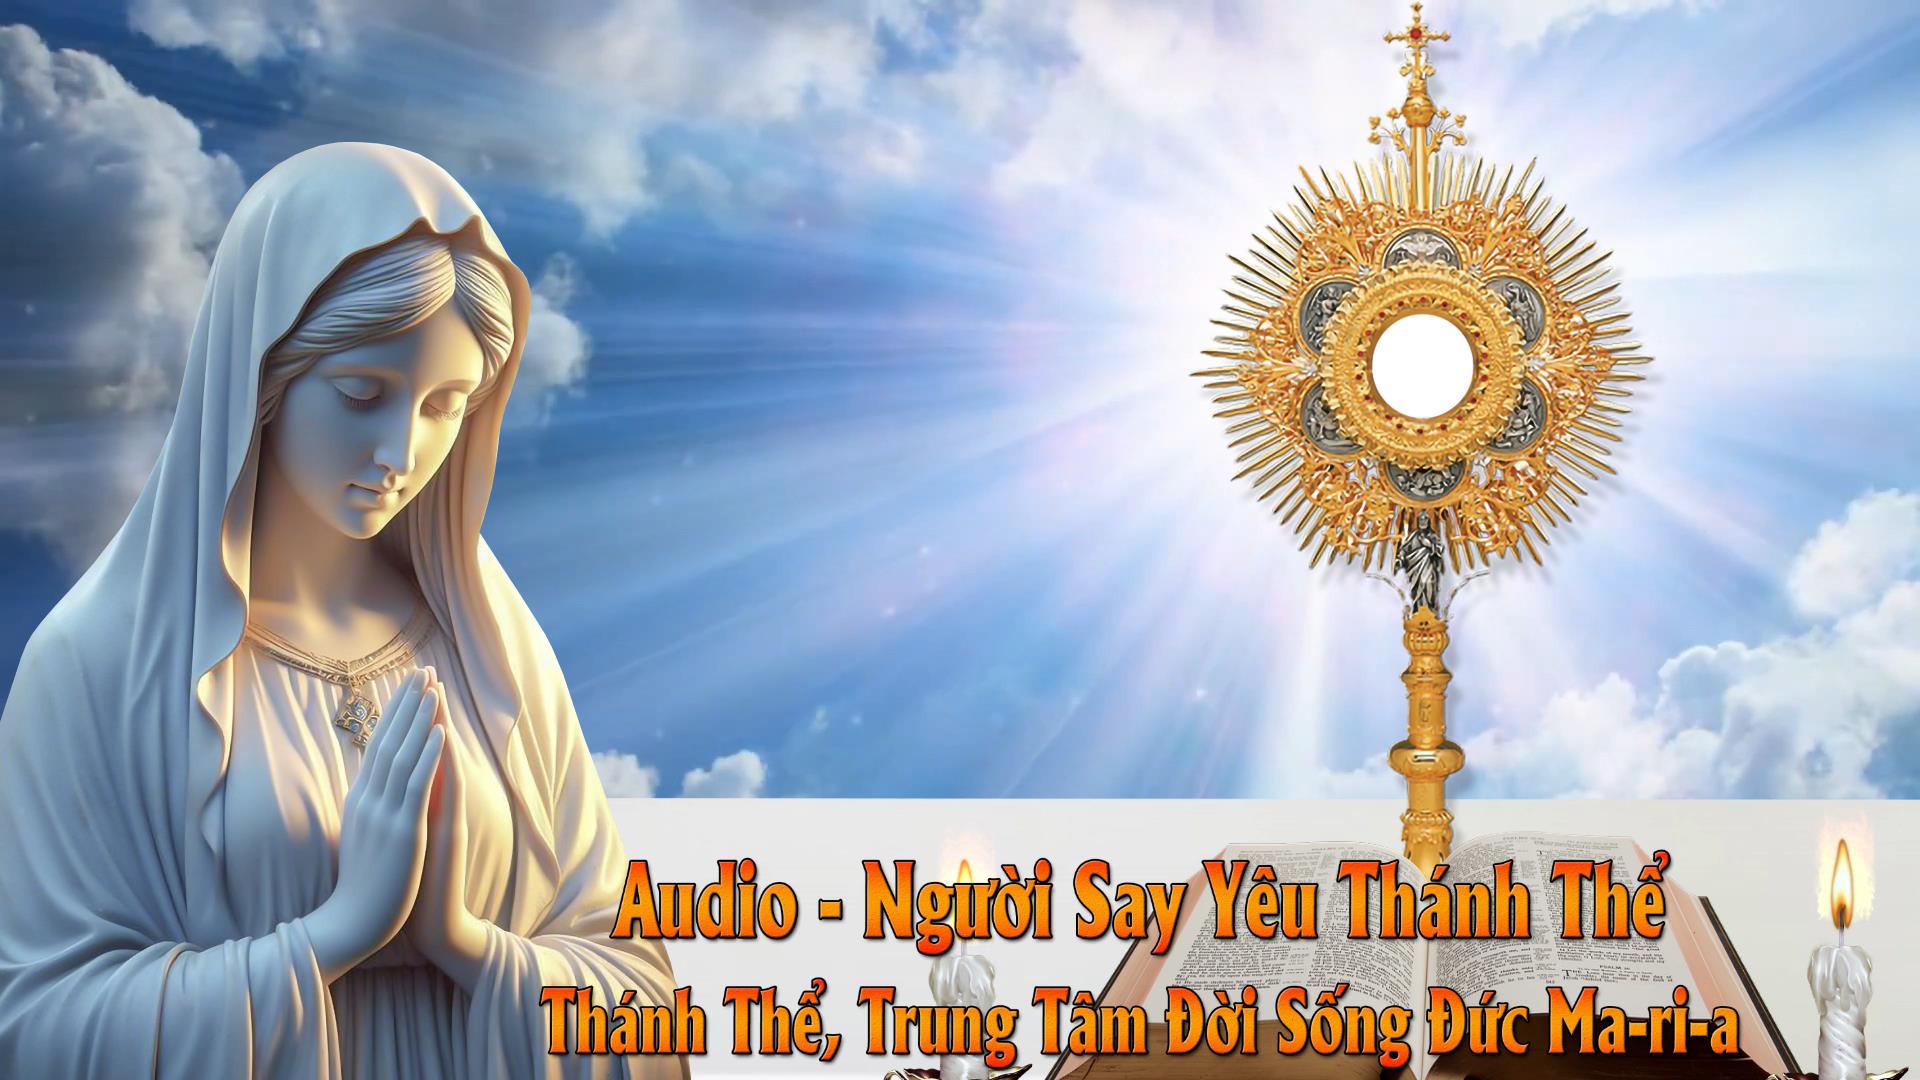 Audio - Thánh Thể, Trung Tâm Đời Sống Đức Ma-ri-a